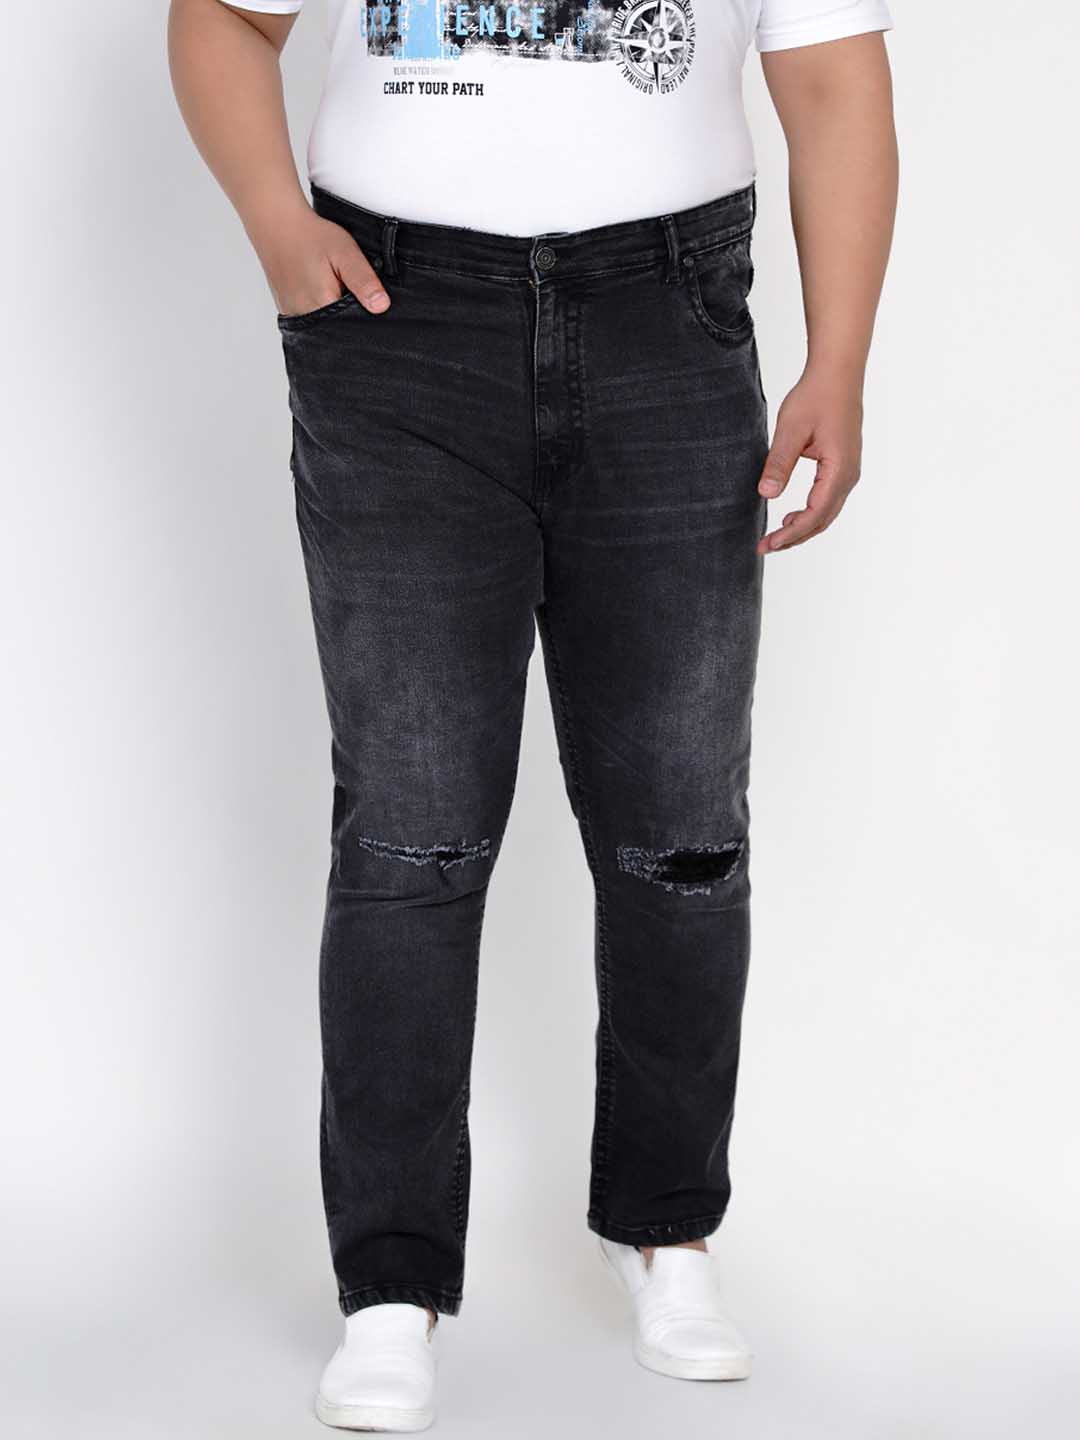 bottomwear/jeans/JPJ12125/jpj12125-1.jpg